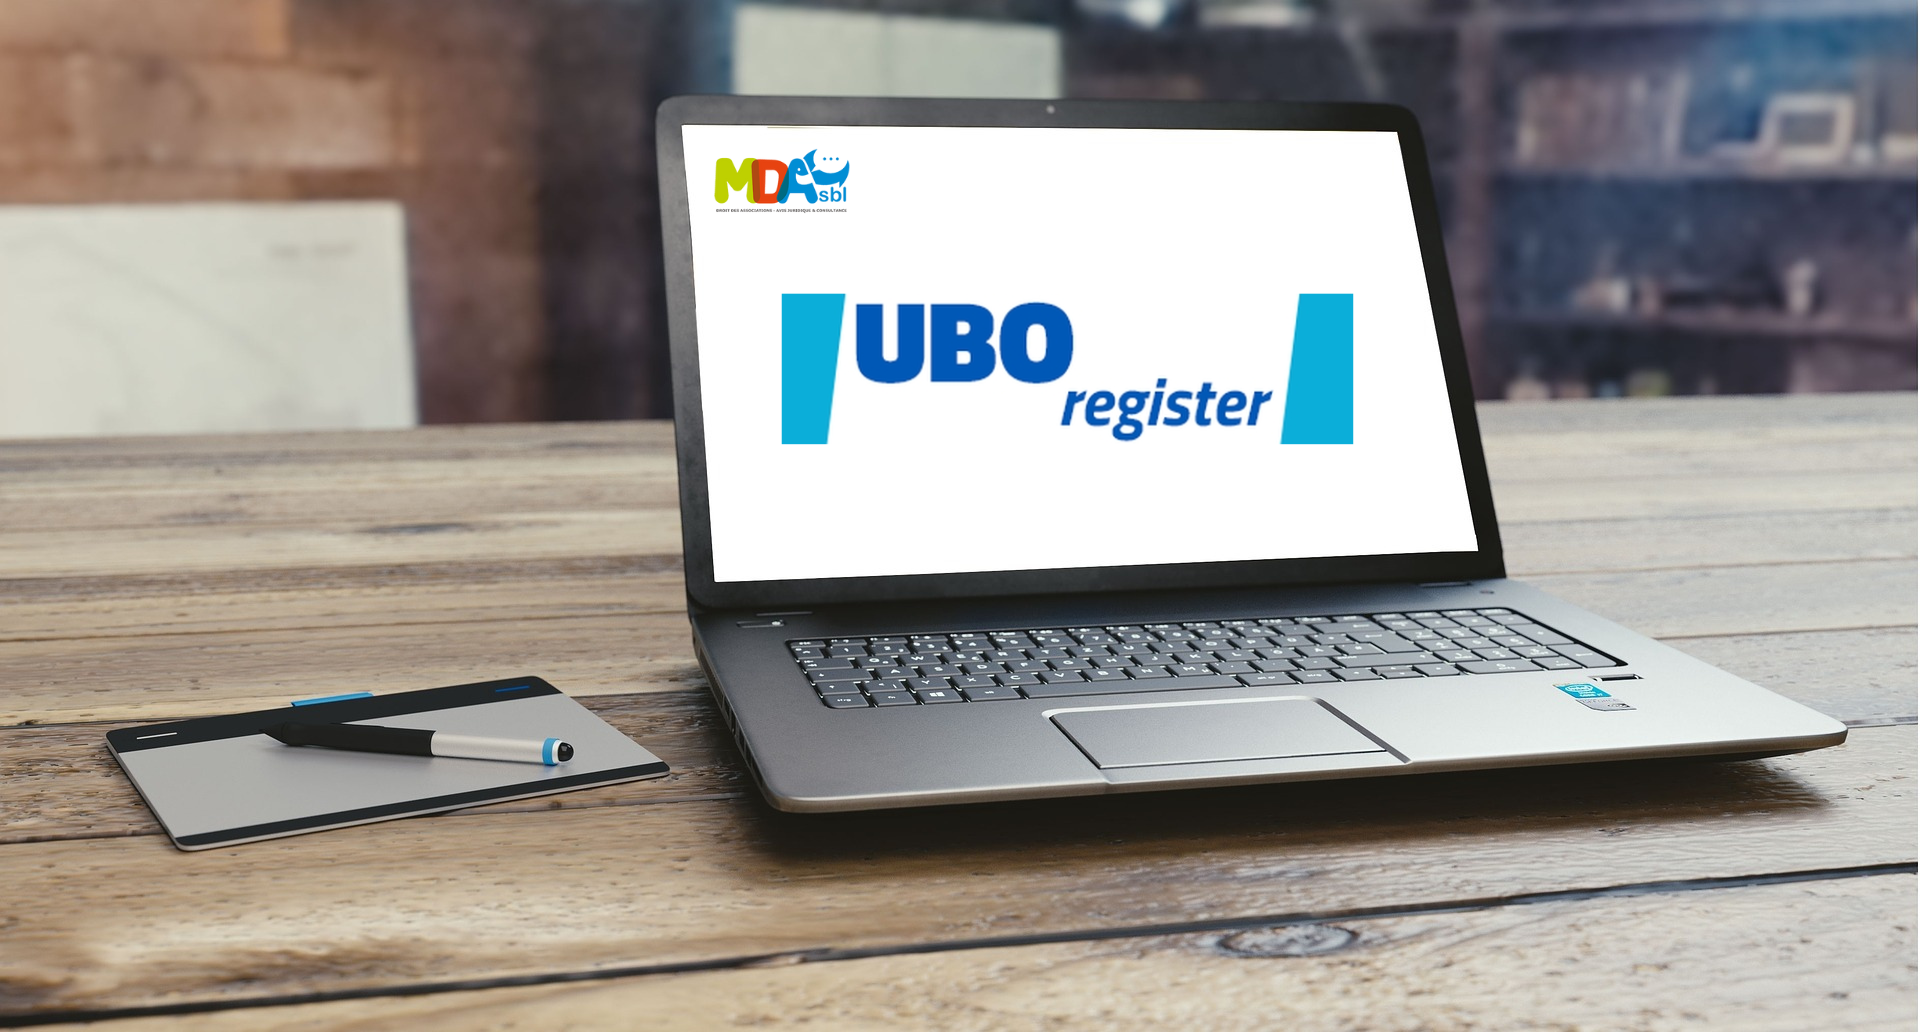 UBO register